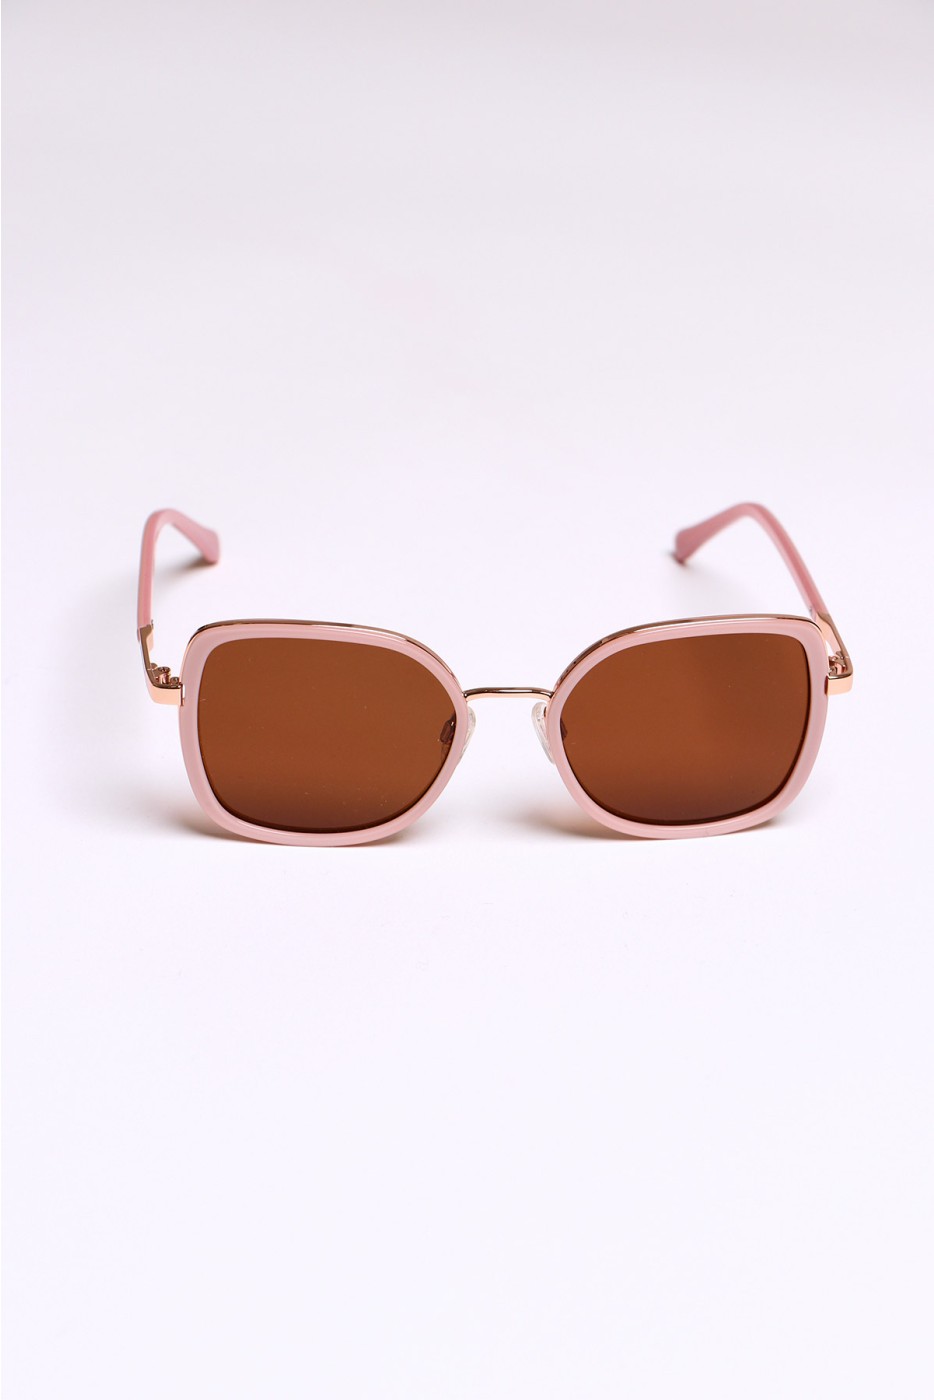 Square sunglasses for women